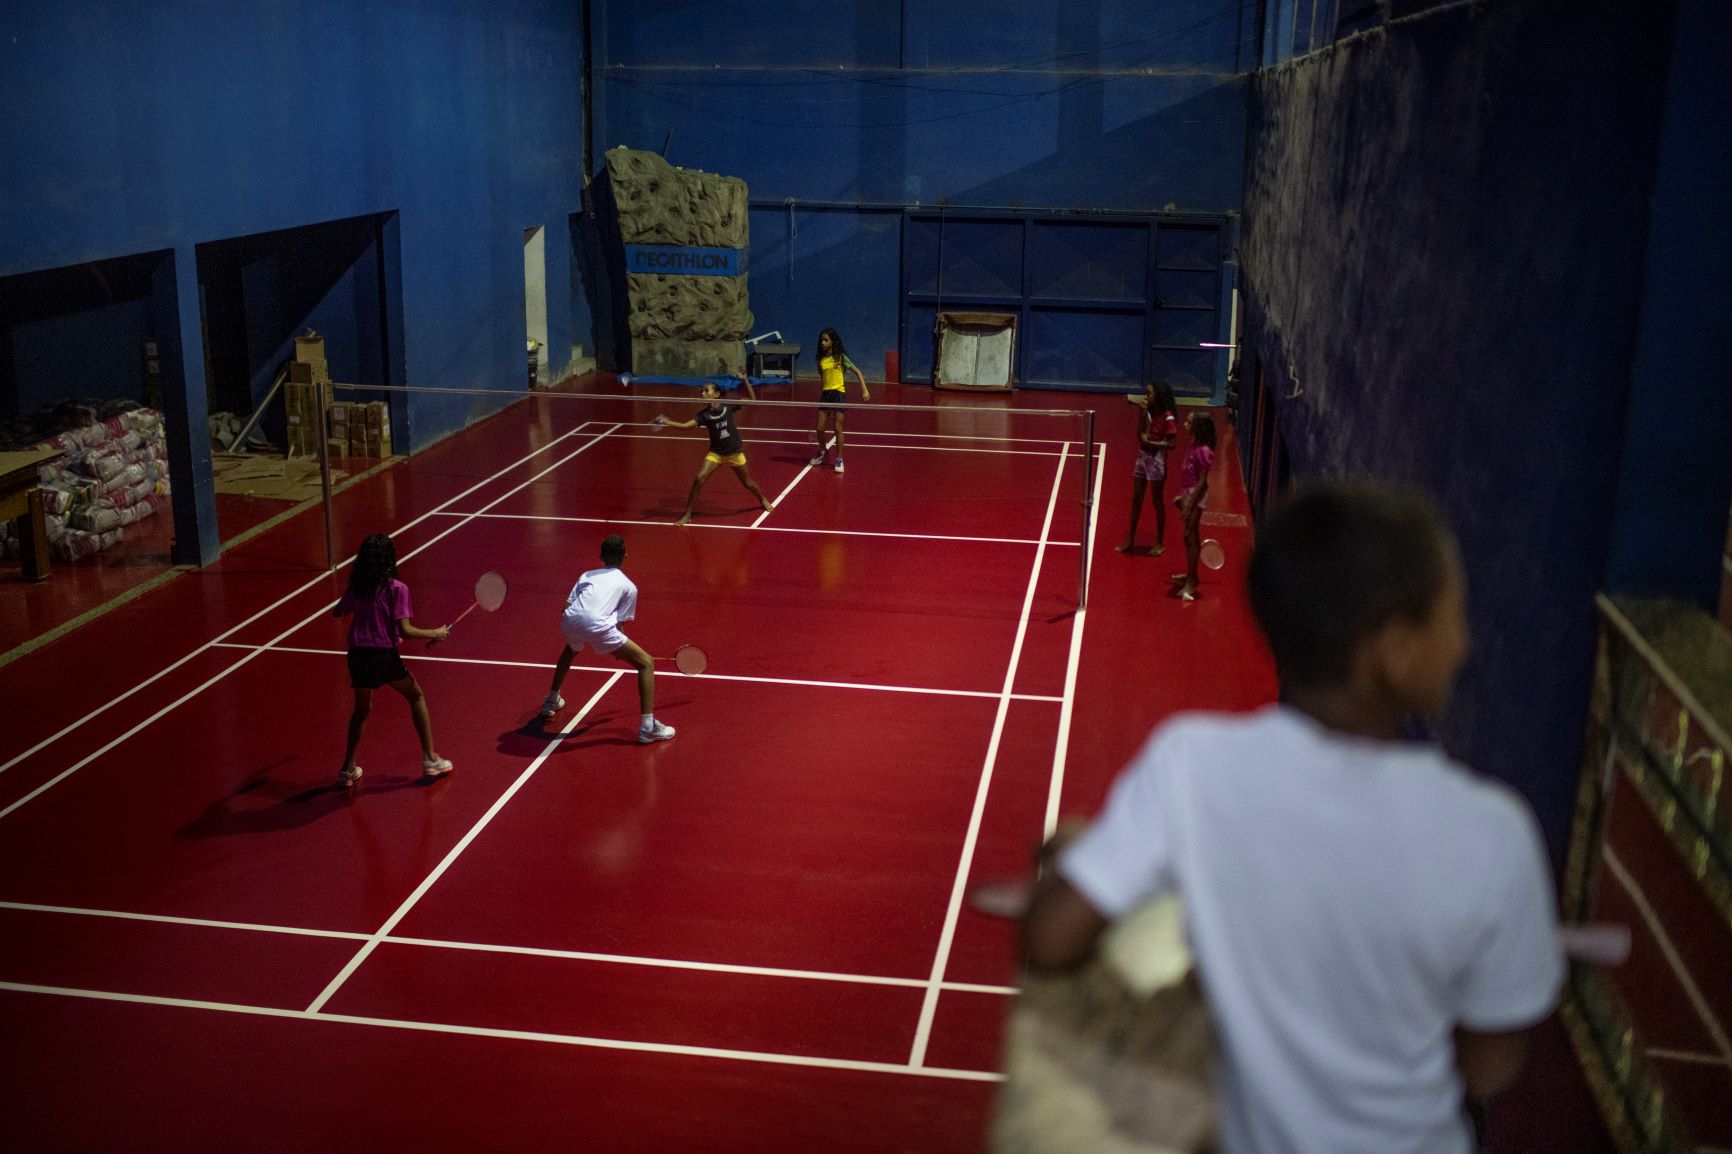 Crianças observam jogo de badminton na Miratus: quatro quadras de treinamento, além de salas para aulas de informática e idiomas (Foto: Lucas Landau)